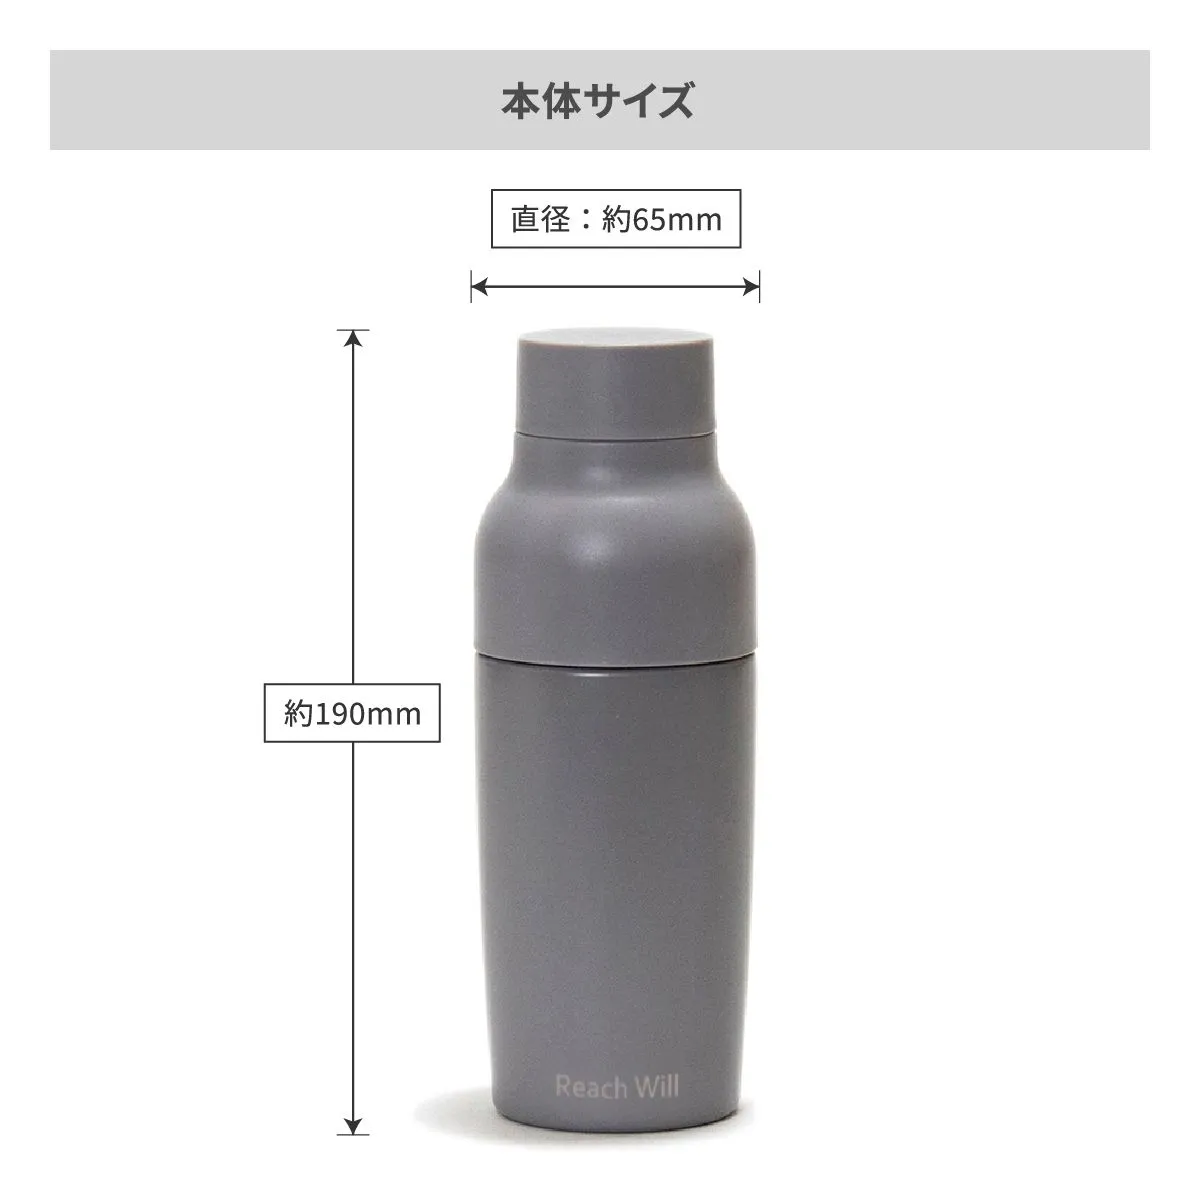 リーチウィル vaseステンレスマグボトル 380ml【オリジナルステンレスボトル / 回転シルク印刷】 画像7